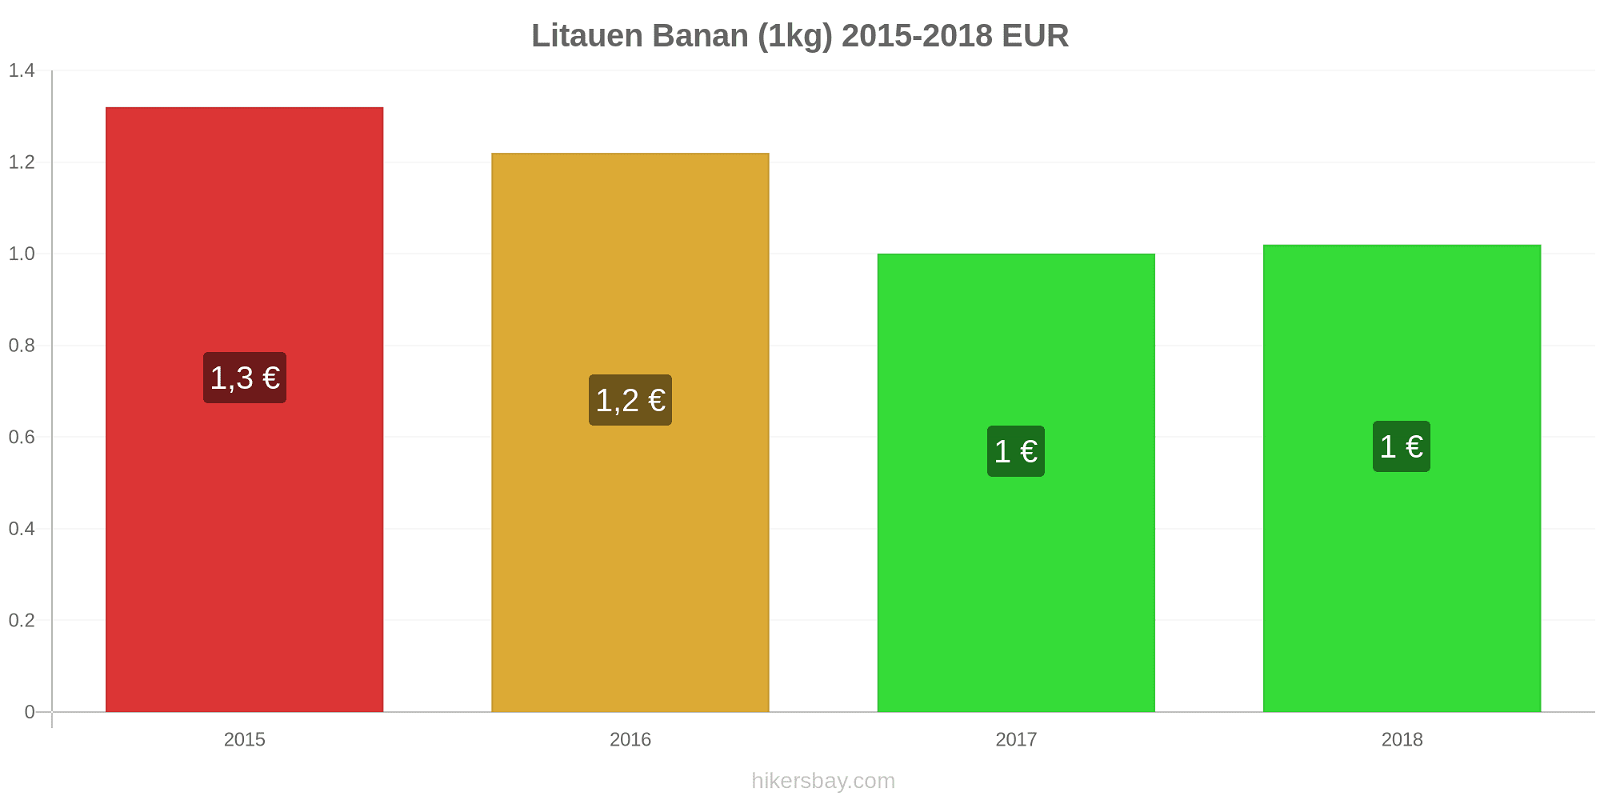 Litauen prisændringer Bananer (1kg) hikersbay.com